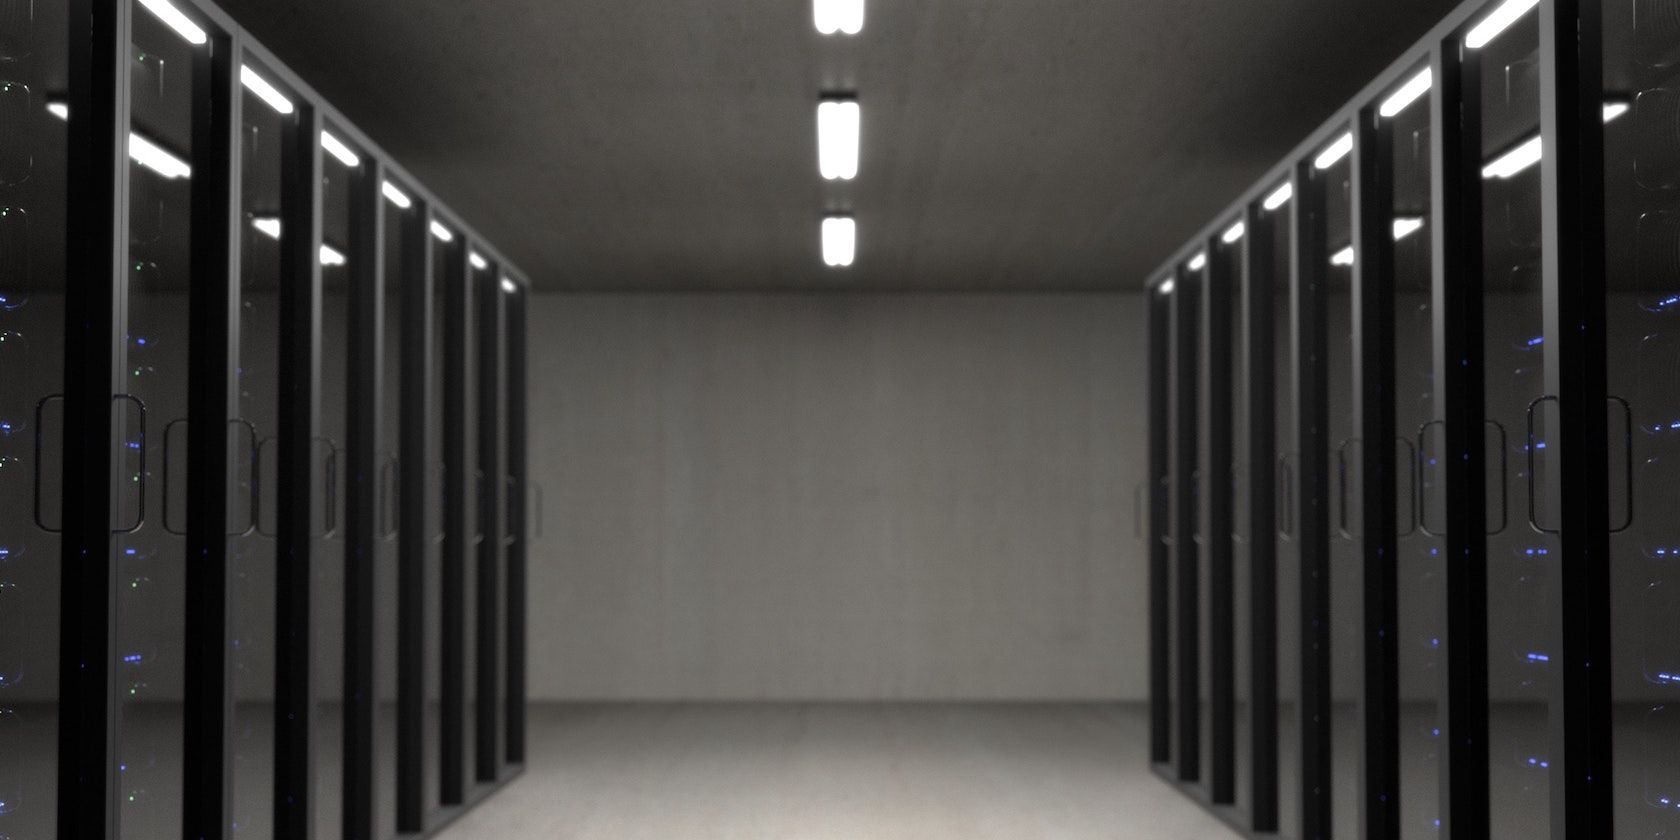 A corridor between rows of server racks behind glass doors.